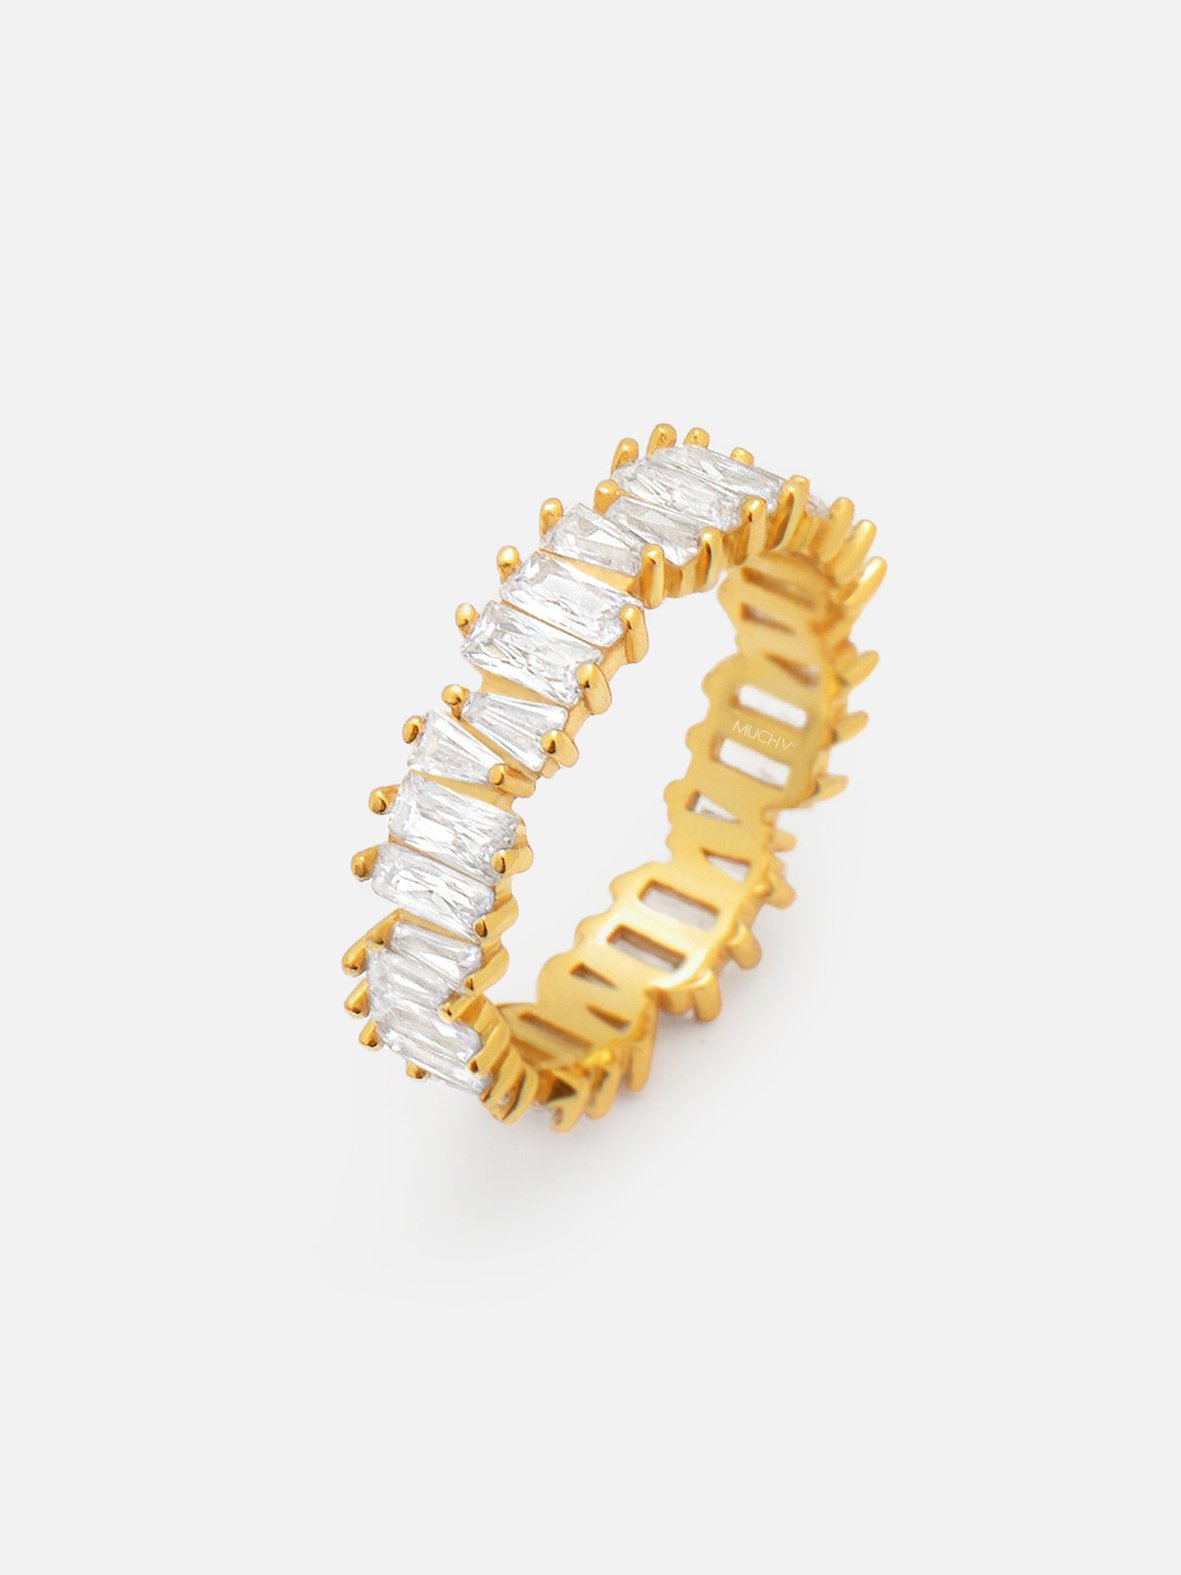 Silver & Gold Eternity Rings - Shop Women's Jewellery | Muchv